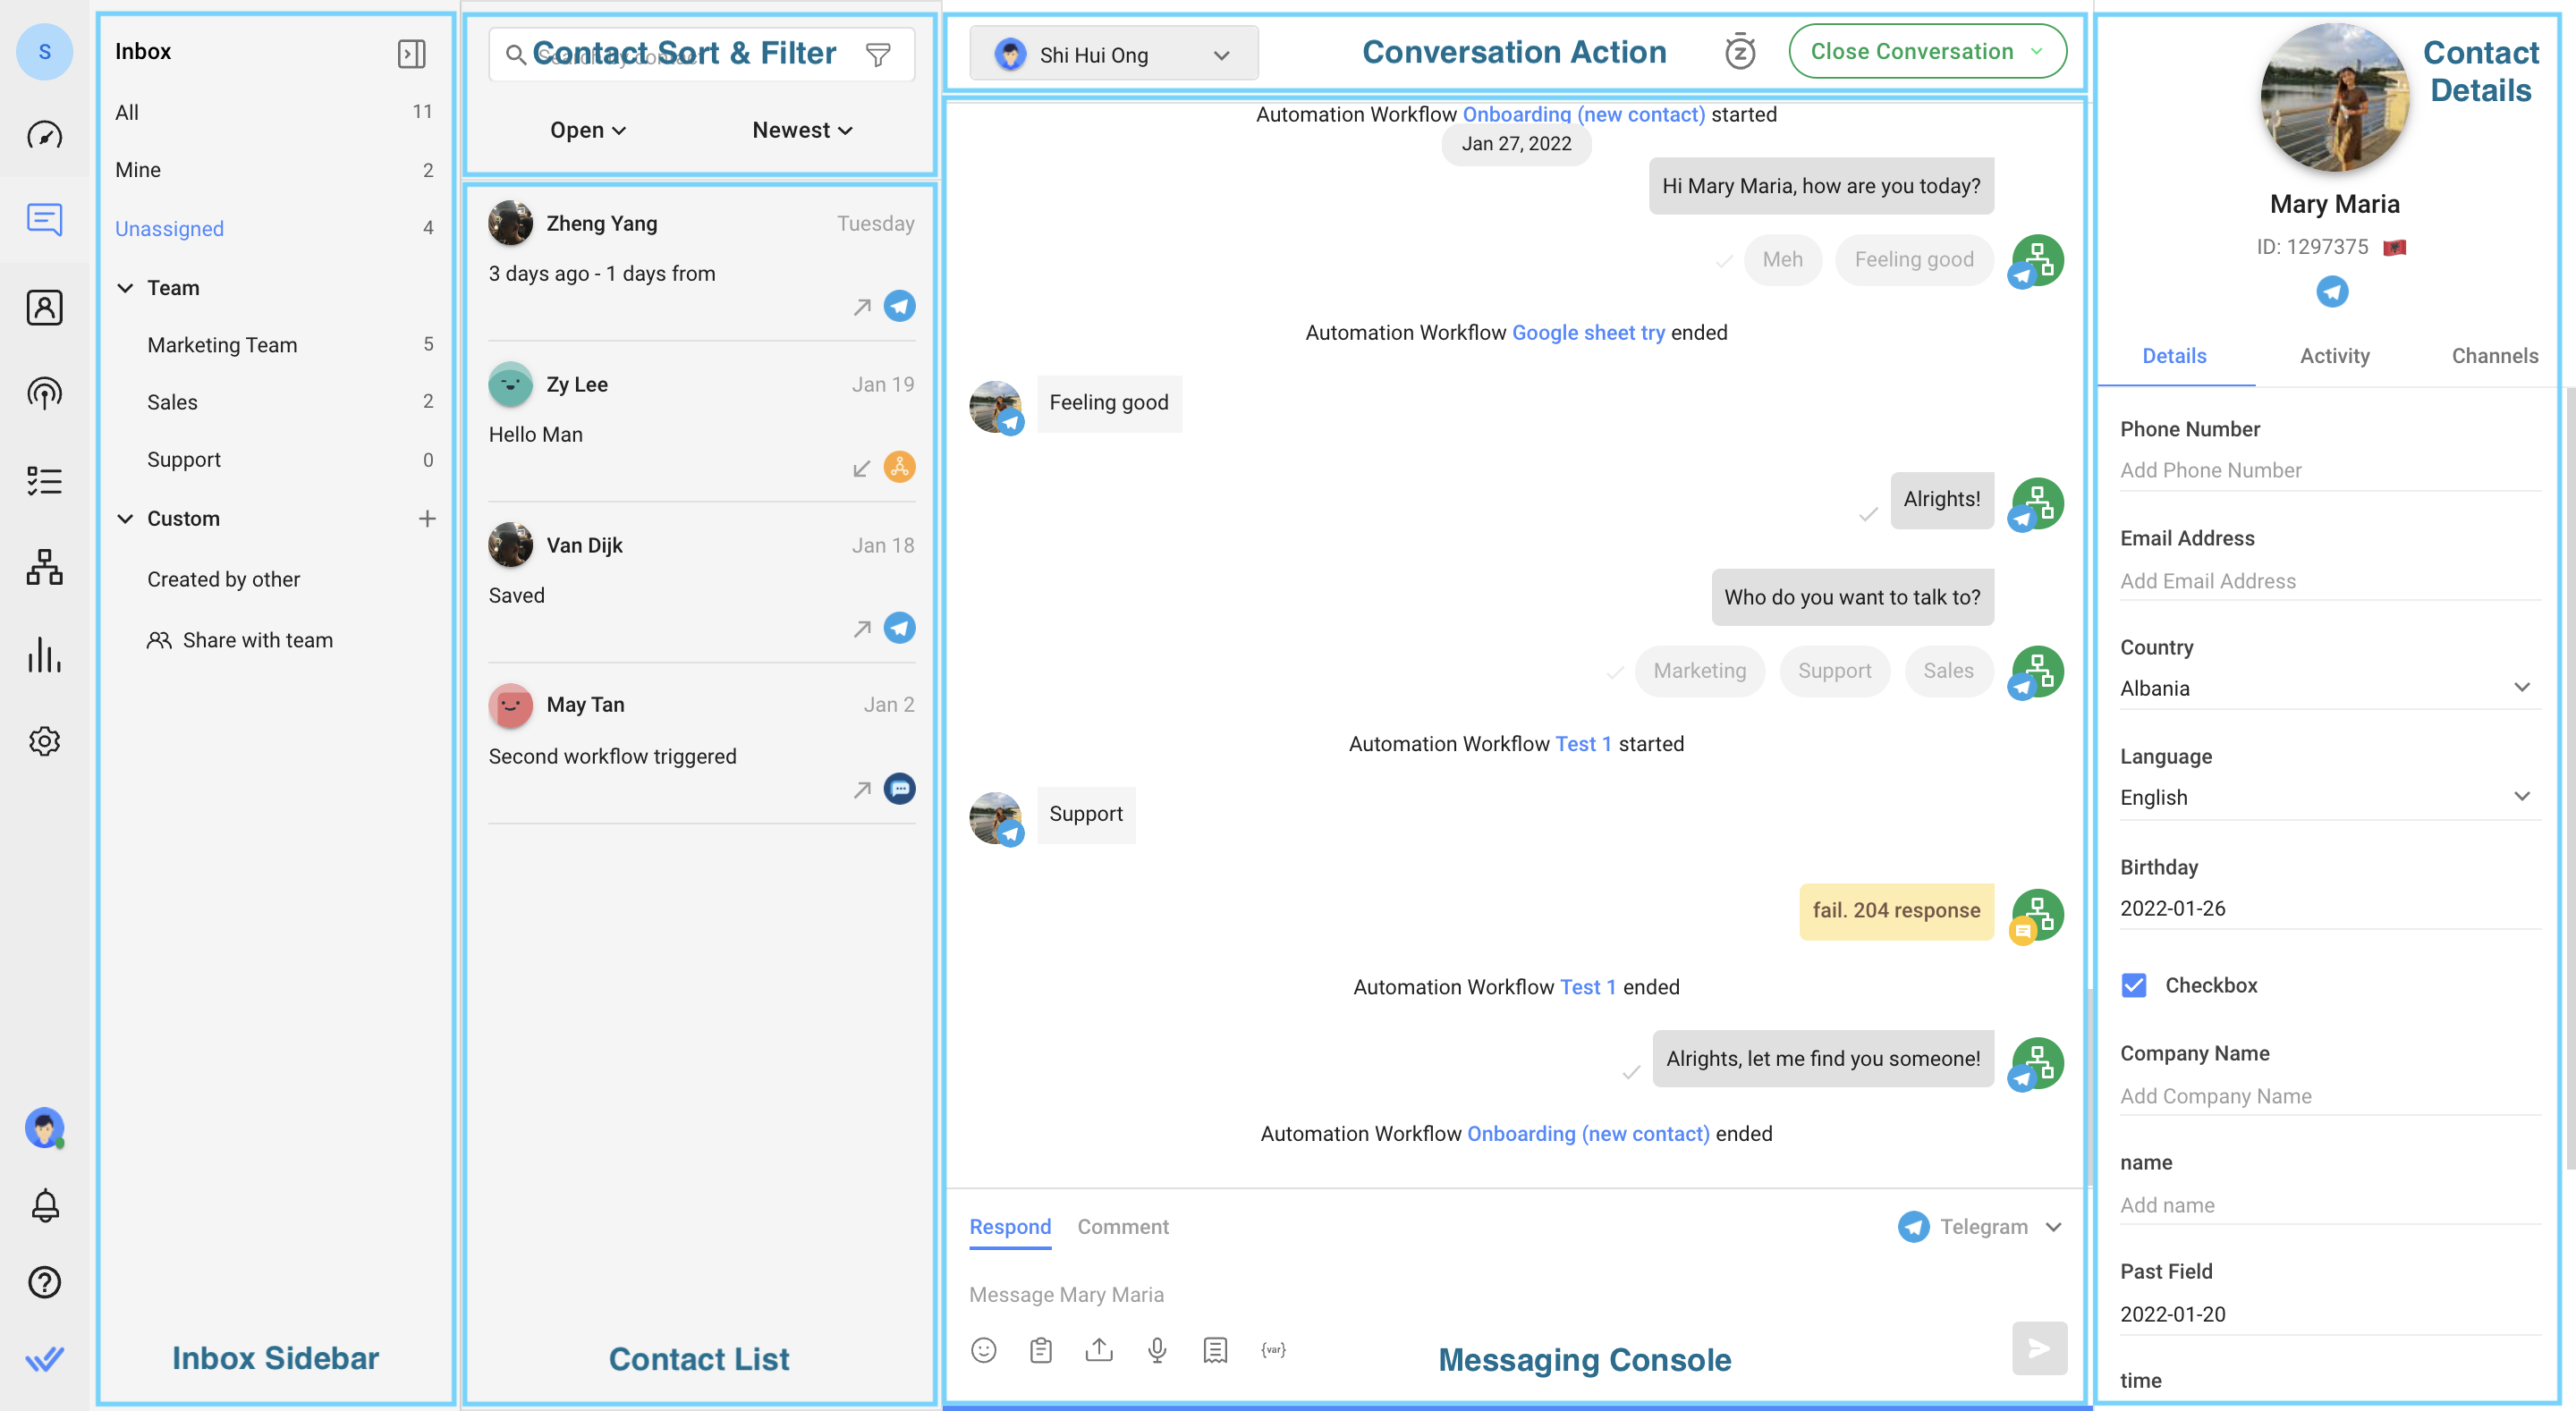 captura de pantalla etiquetada del Módulo de Mensajes mostrando donde están las conversaciones, contactos y filtros